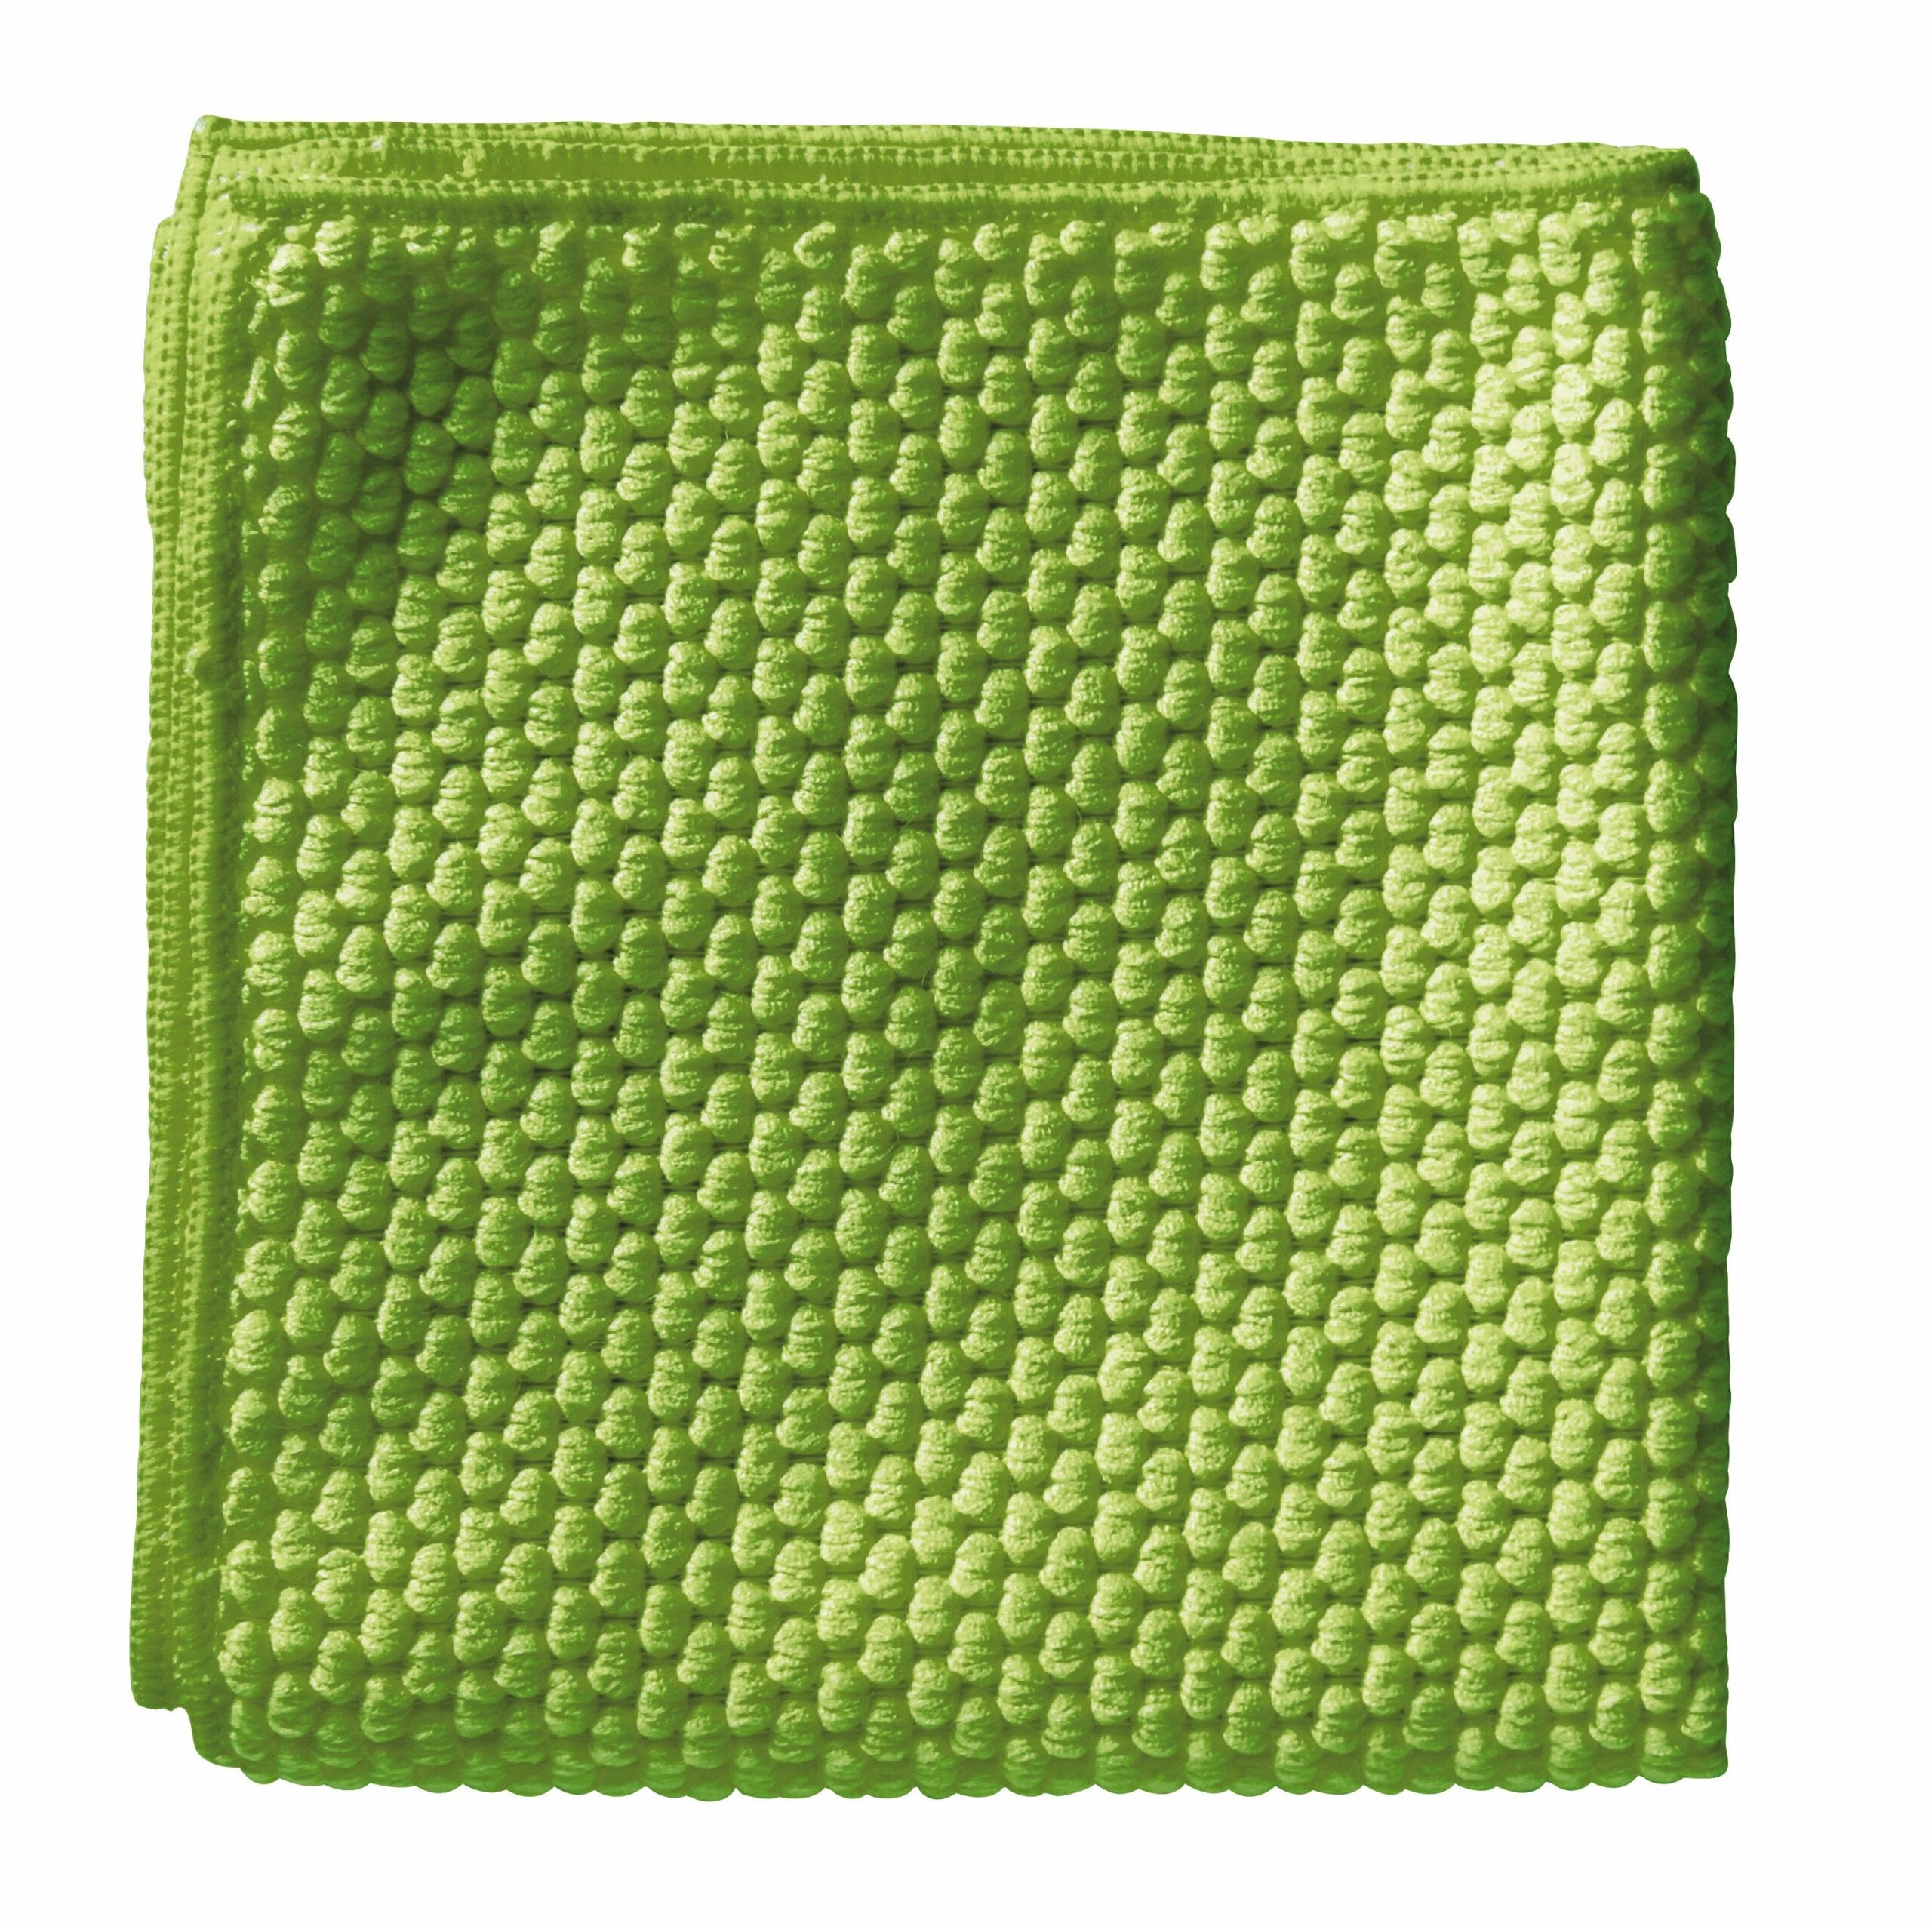 FILTA B-Clean Antibacterial Microfibre Cloth Green 40Cm X 40Cm (30070)